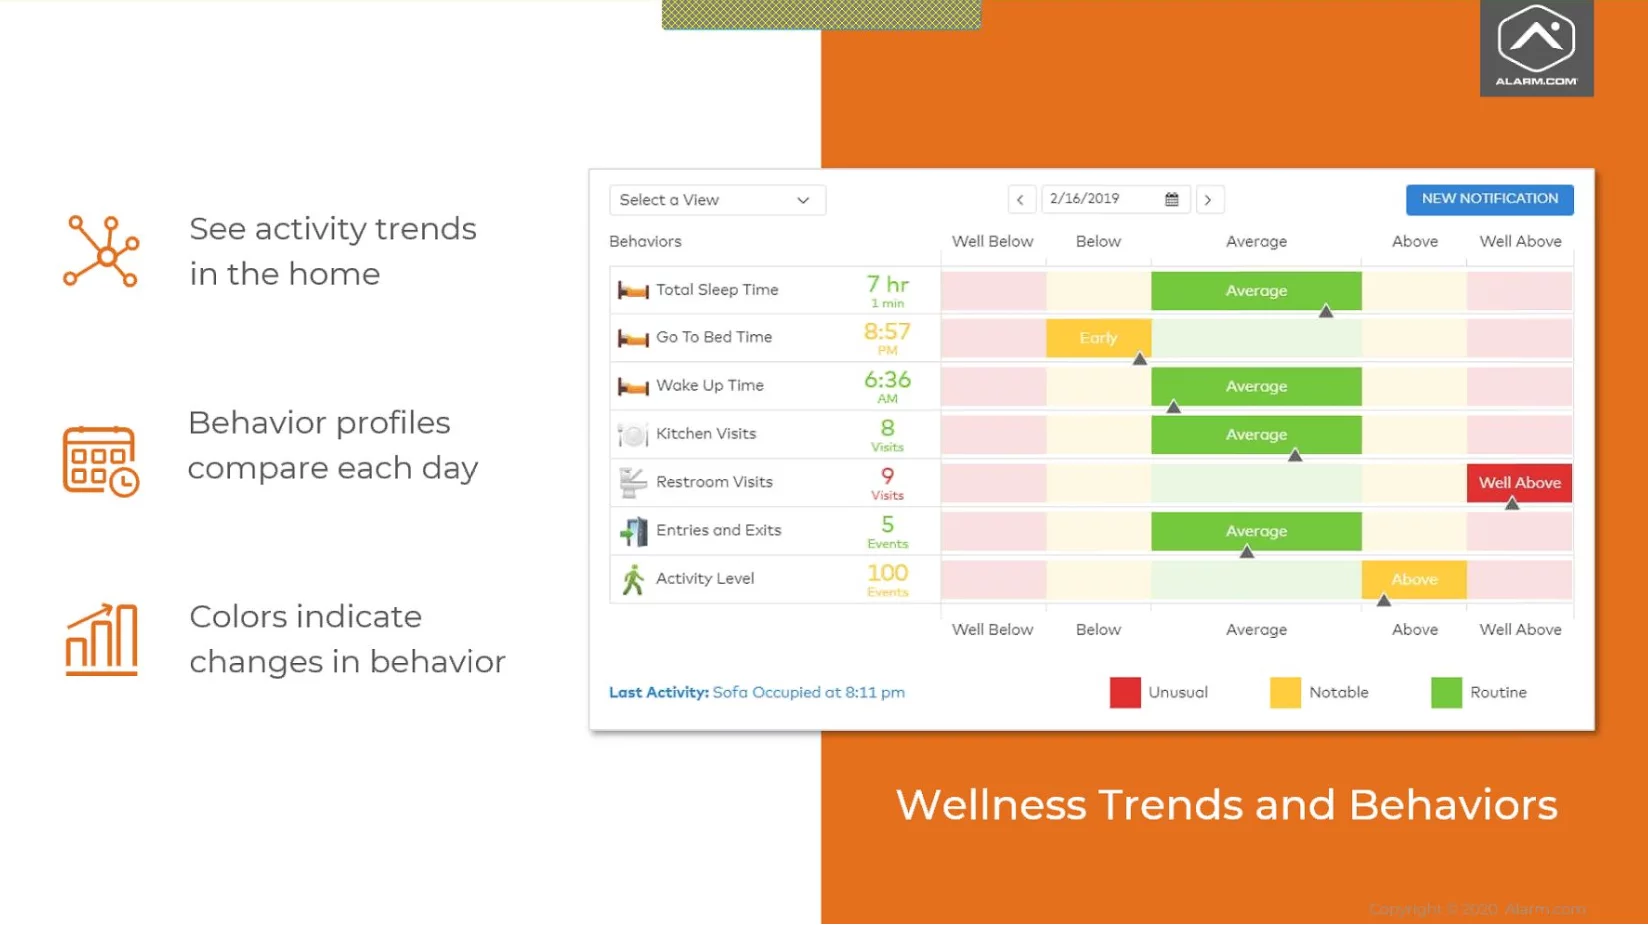 Alarm.com Wellness Trends and Behaviors